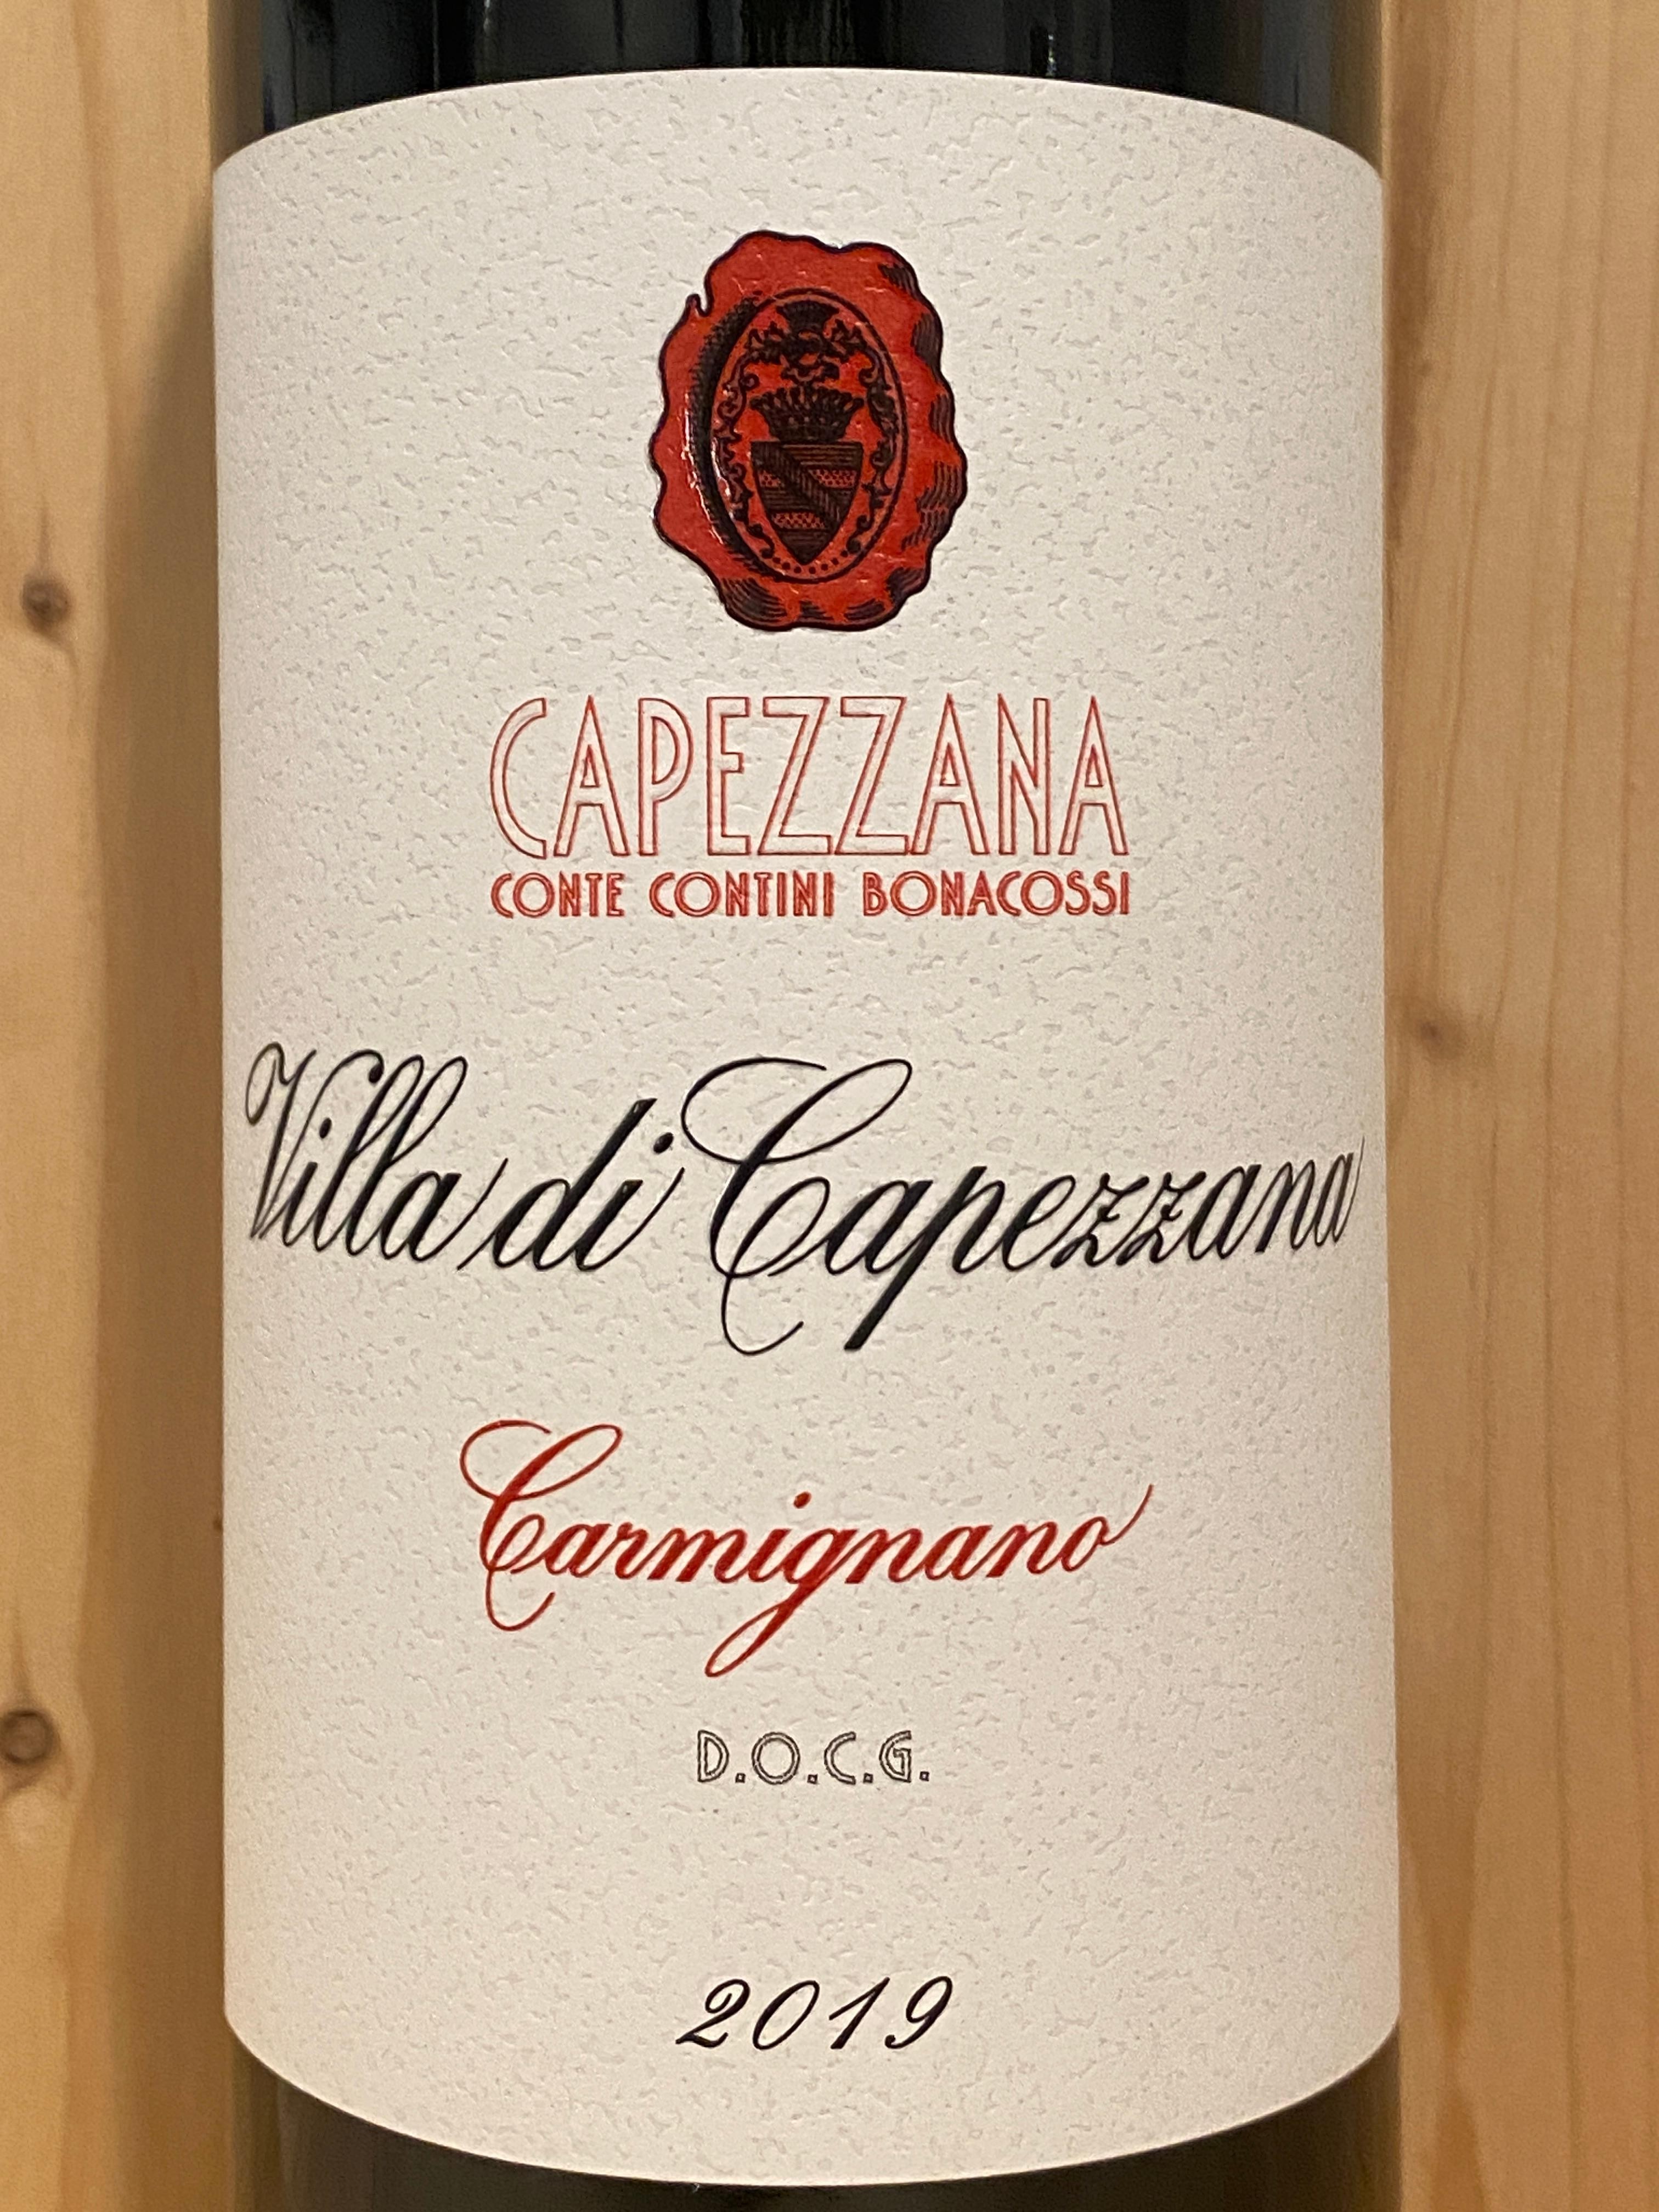 Capezzana "Villa di Capezzana" Carmignano 2019: Tuscany, Italy